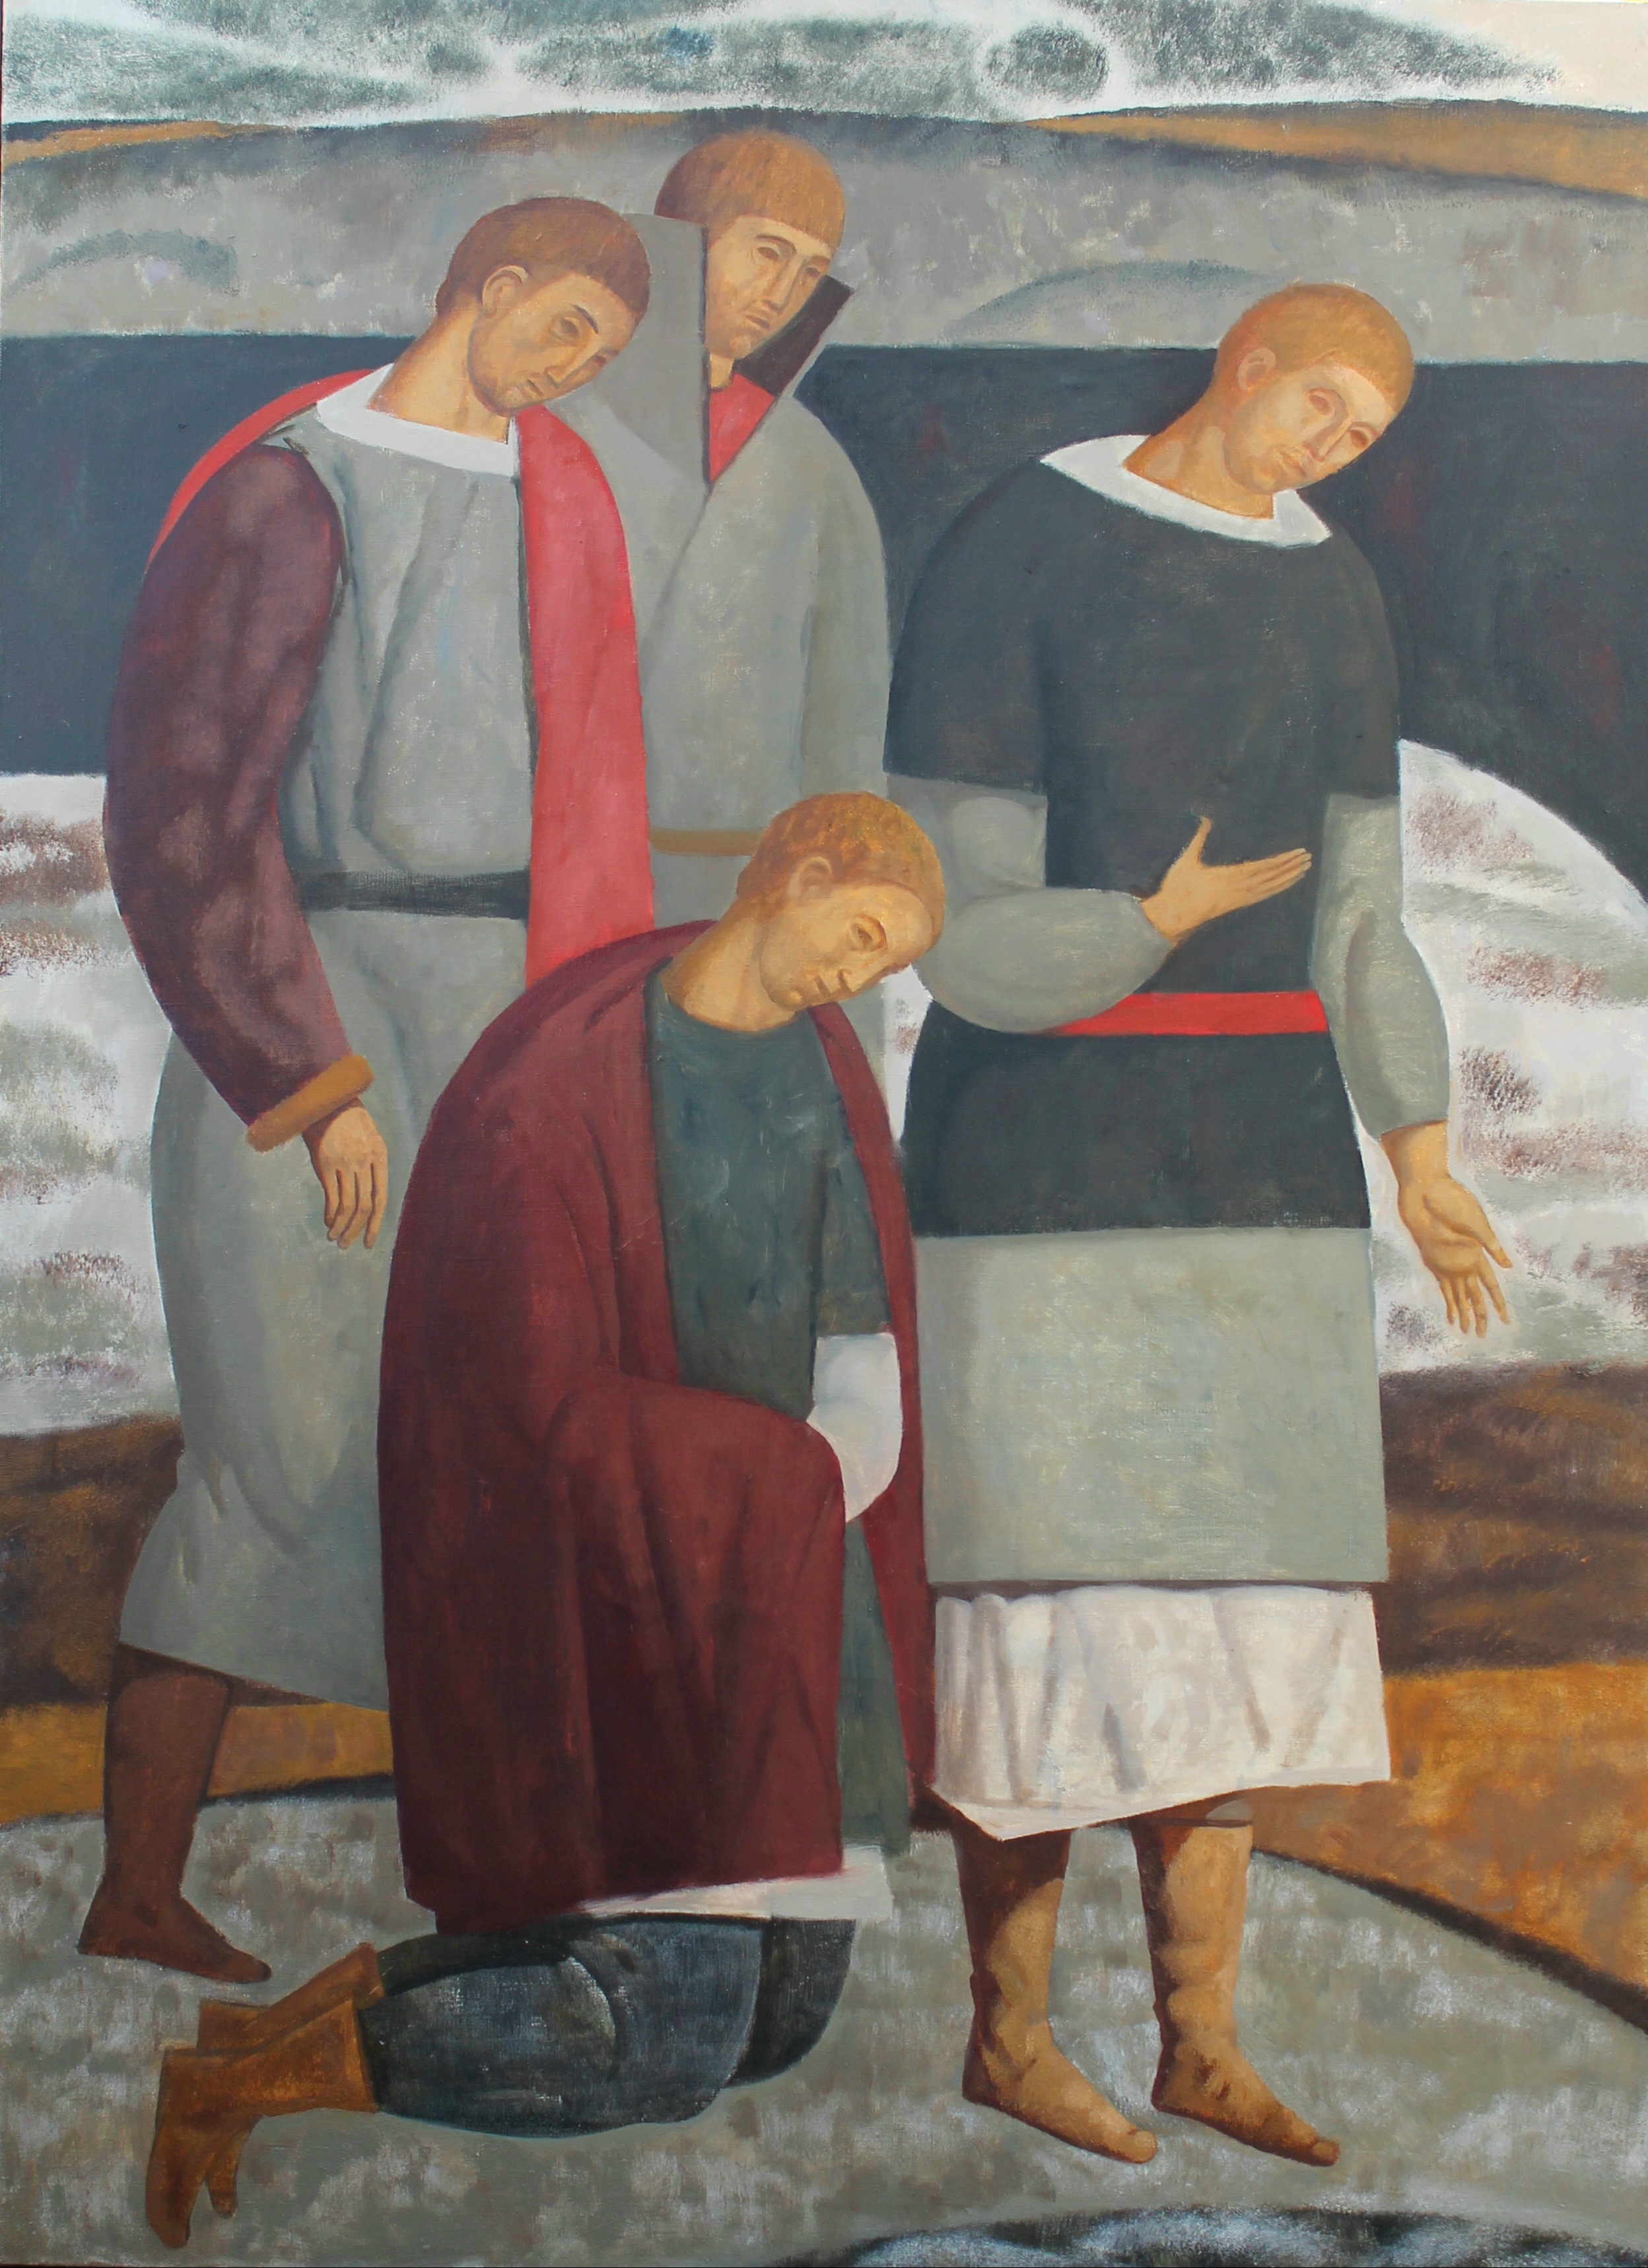 The Prayer - 1, Mary Dobrovolskaya, 买画 油